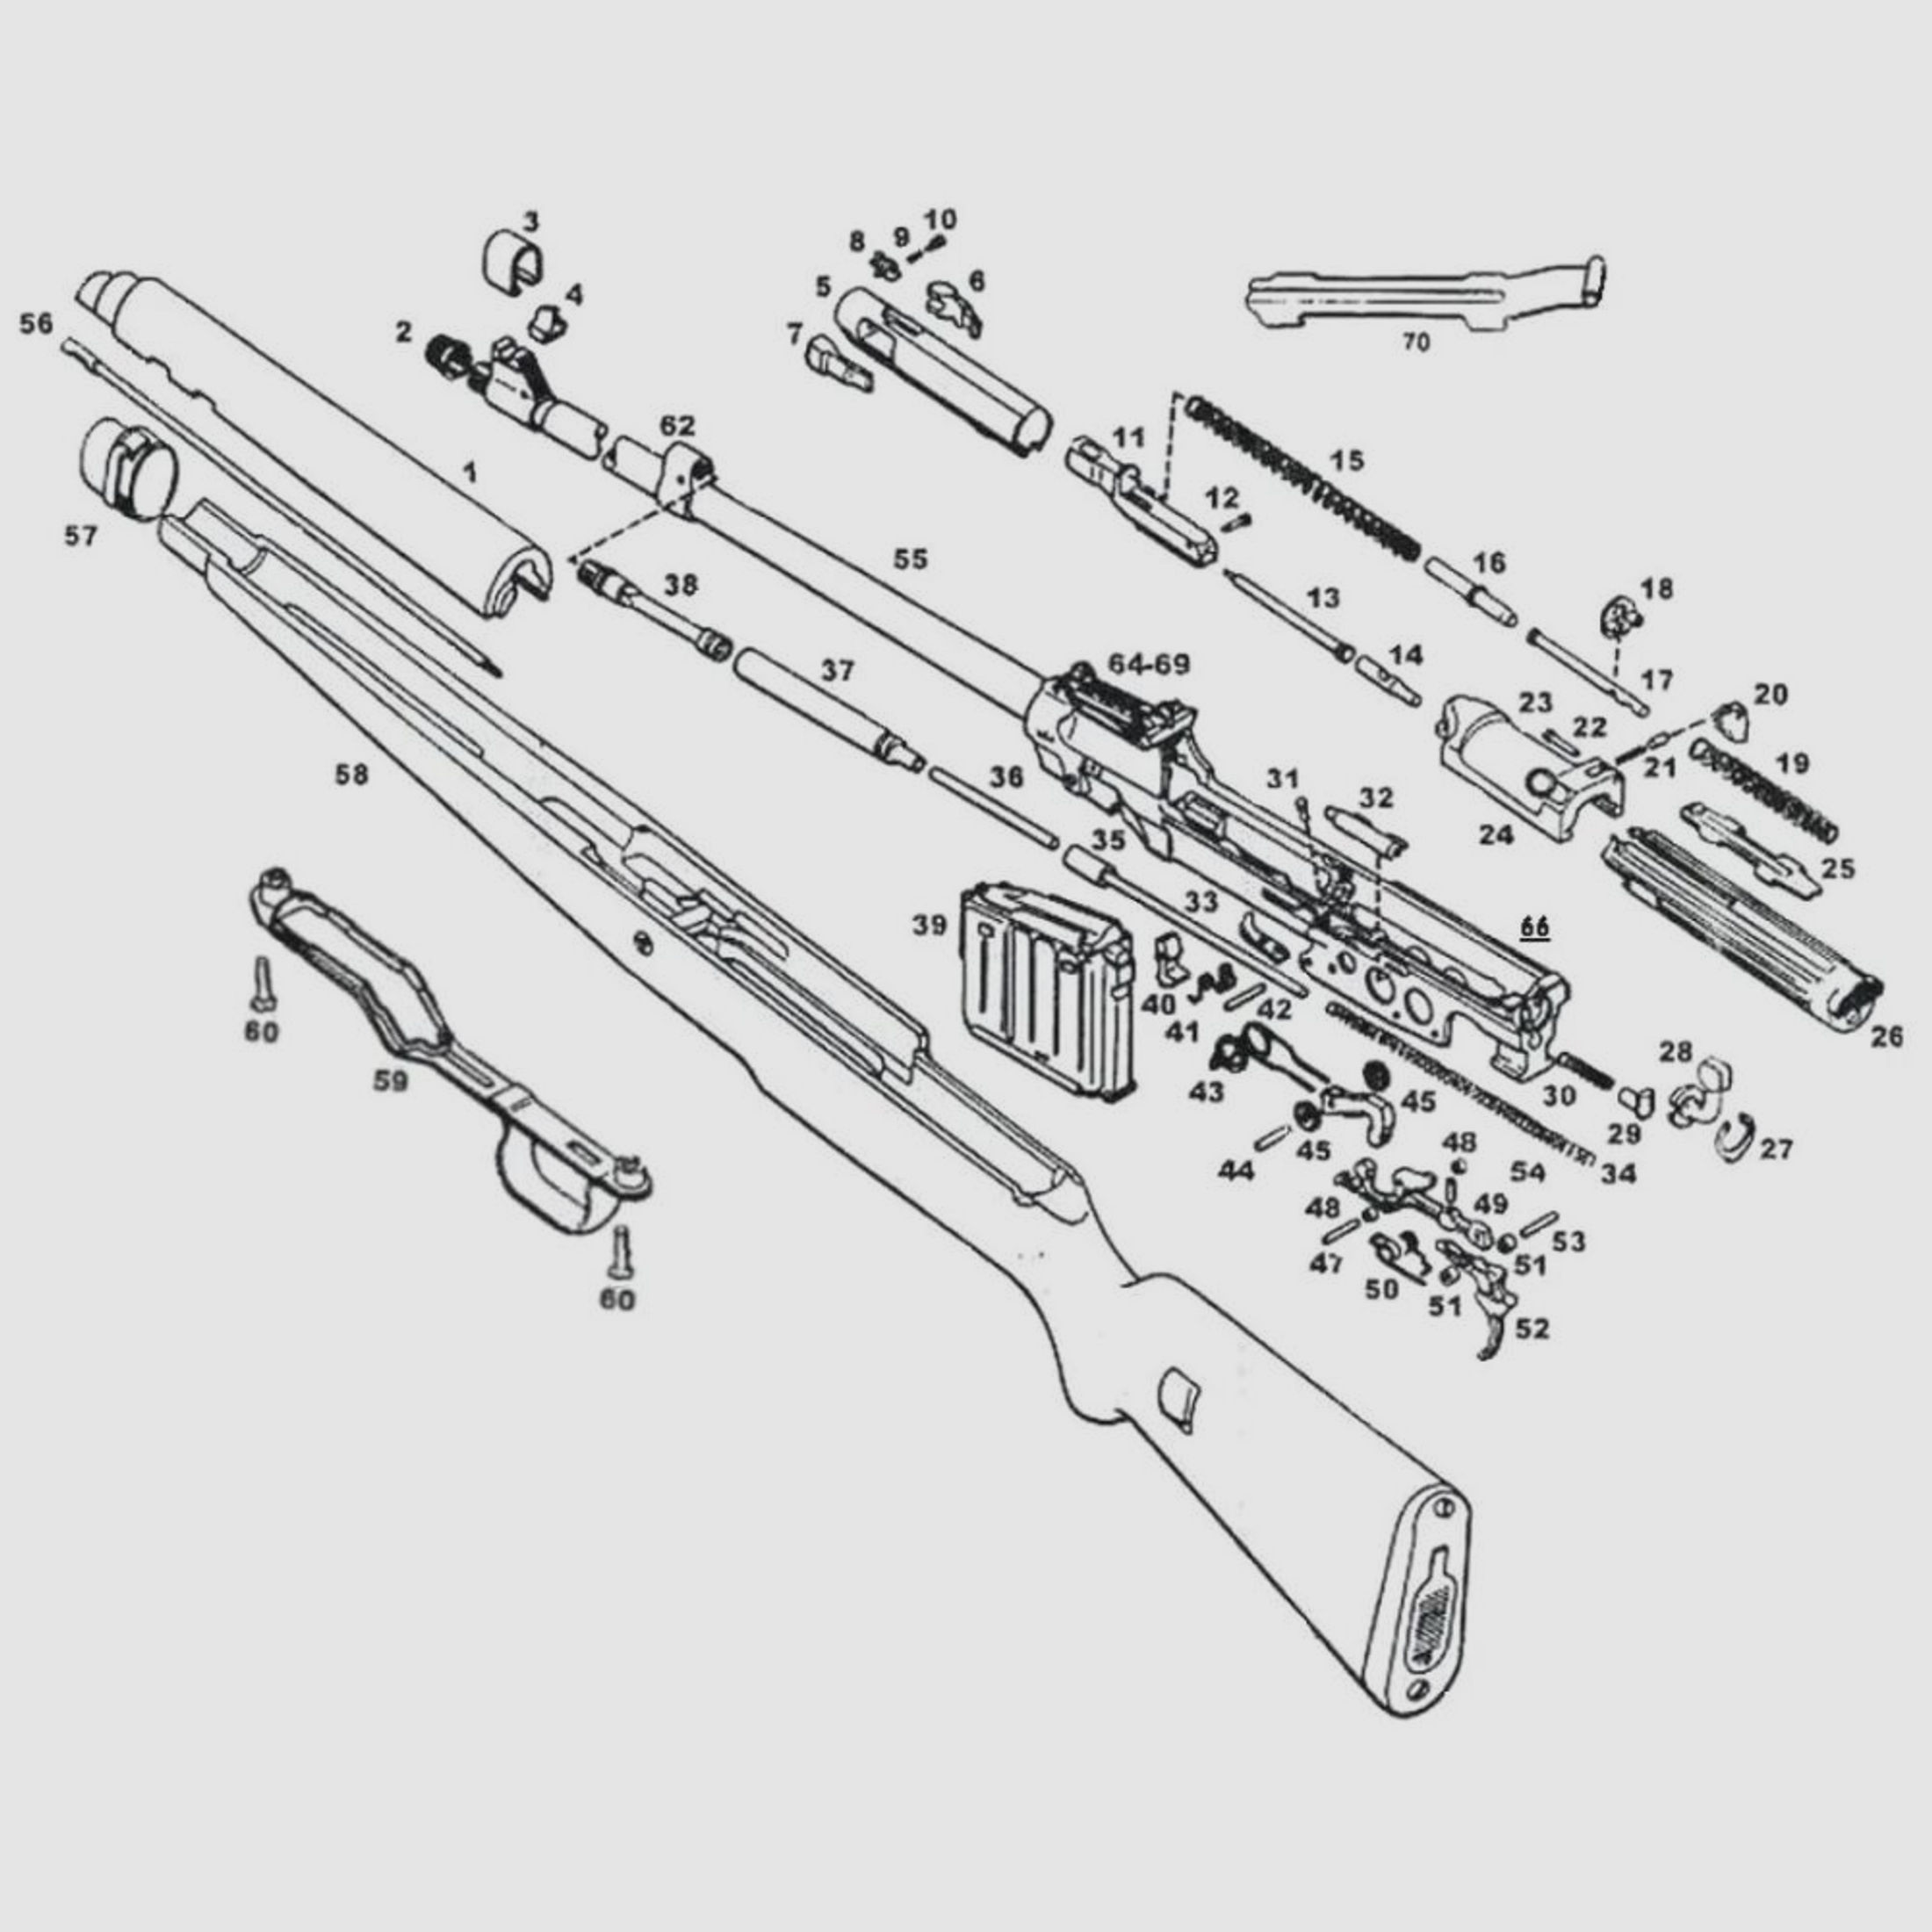 Gewehr 43 / Karabiner 43 ( G43 / K43 )	 [47] Bolzen zu Abzugstange für Gewehr 43 / Karabiner 43 ( G43 / K43 ) original Ersatzteil